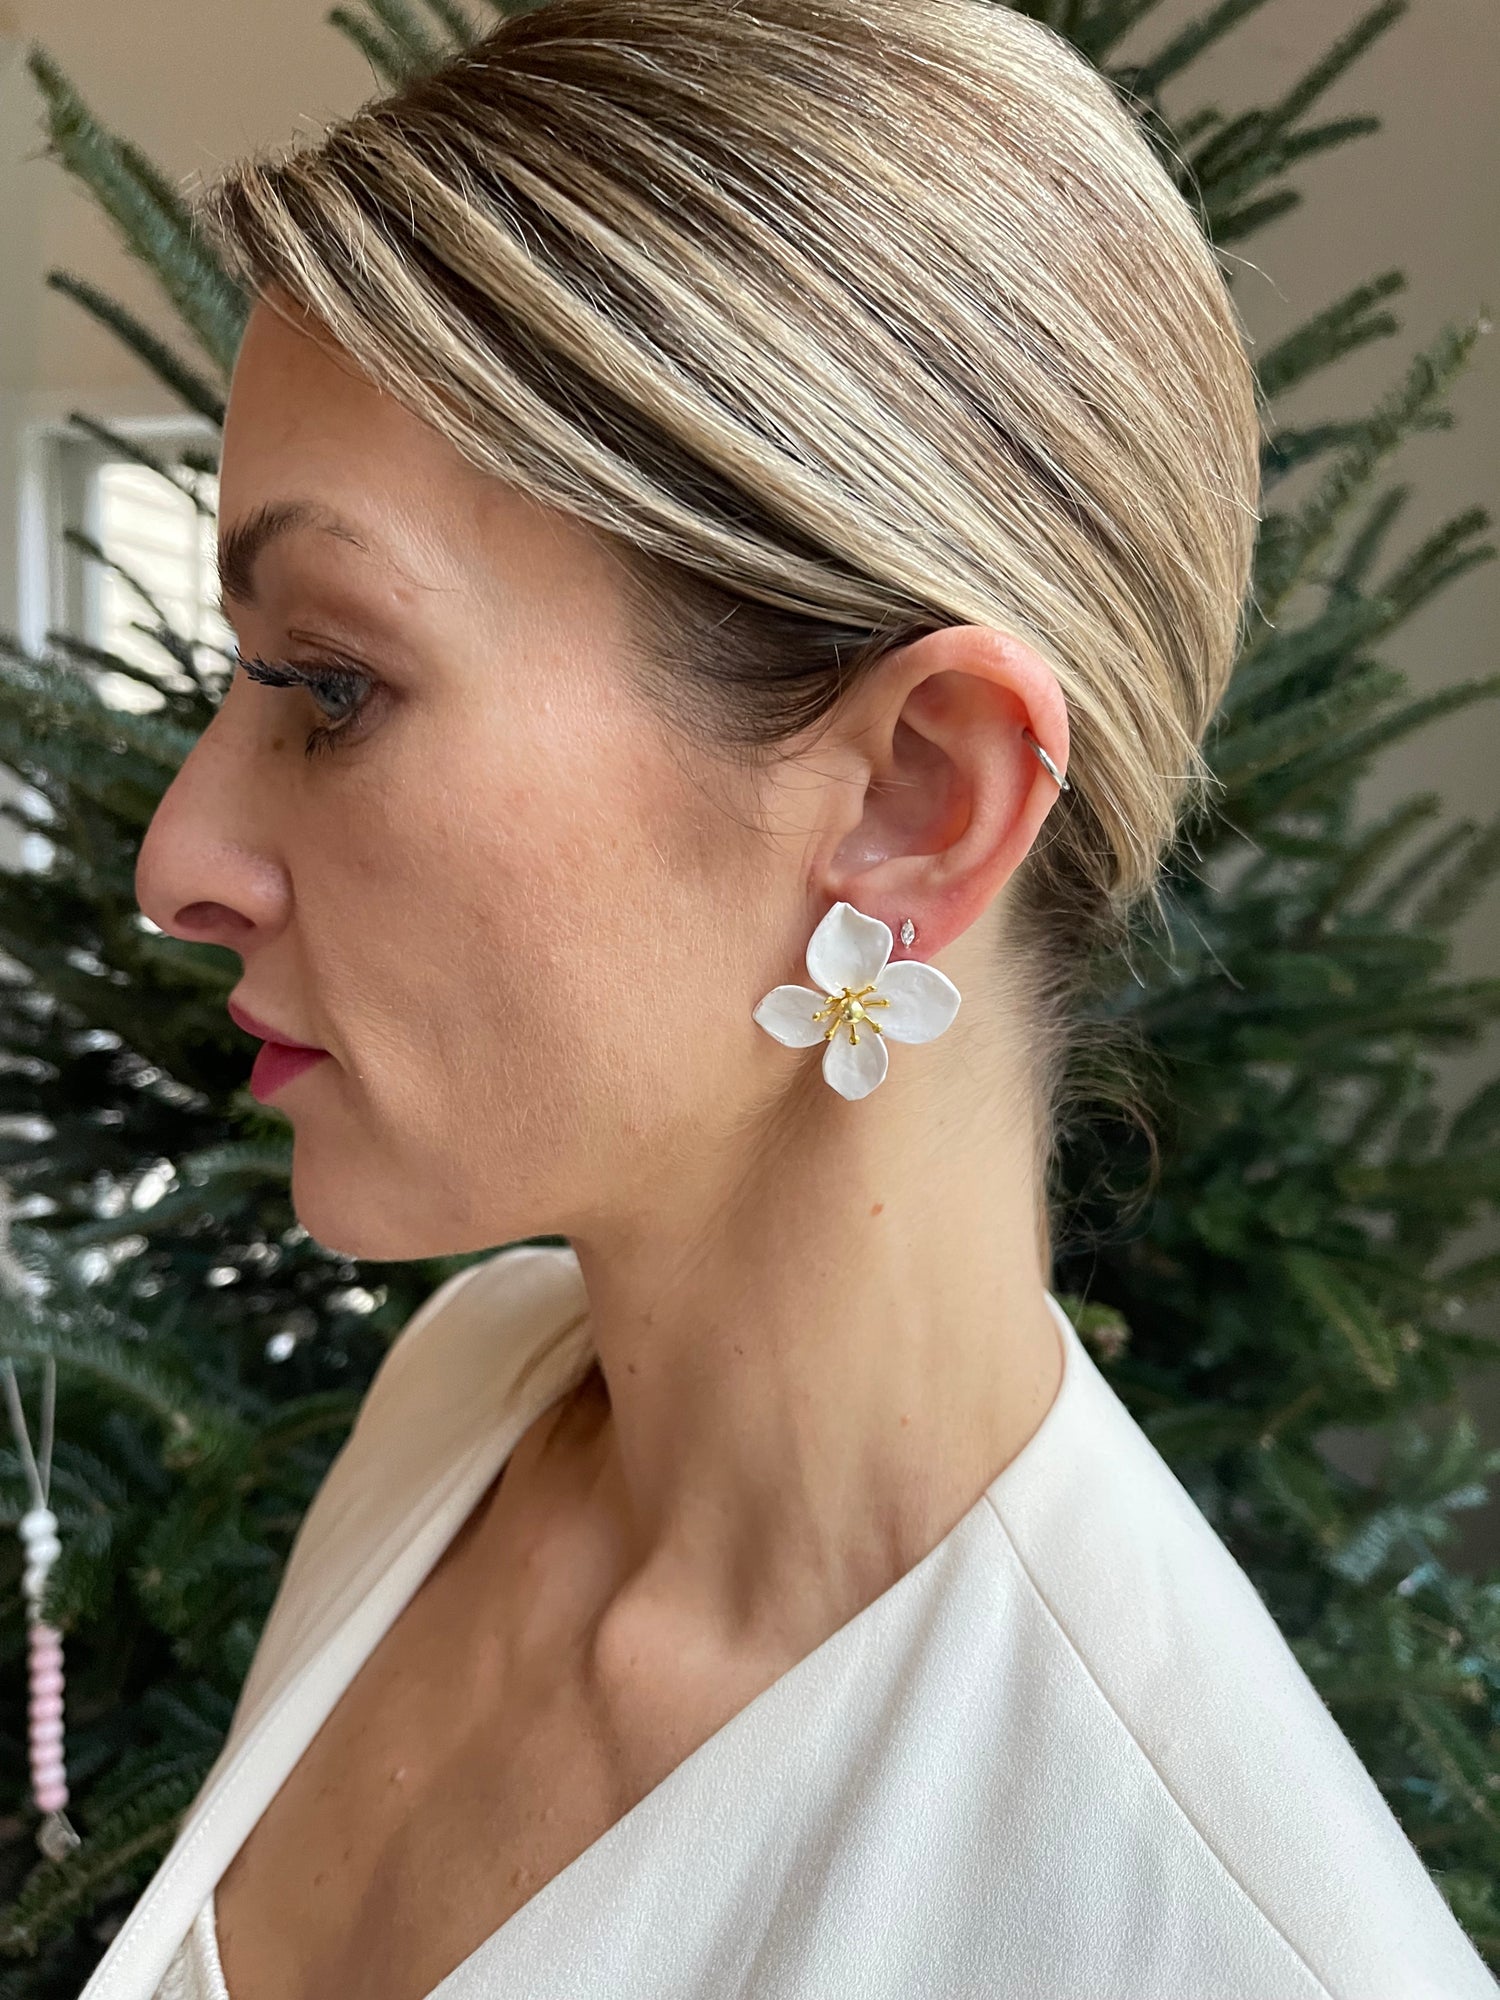 Charleston - Paperwhite Flower Earring